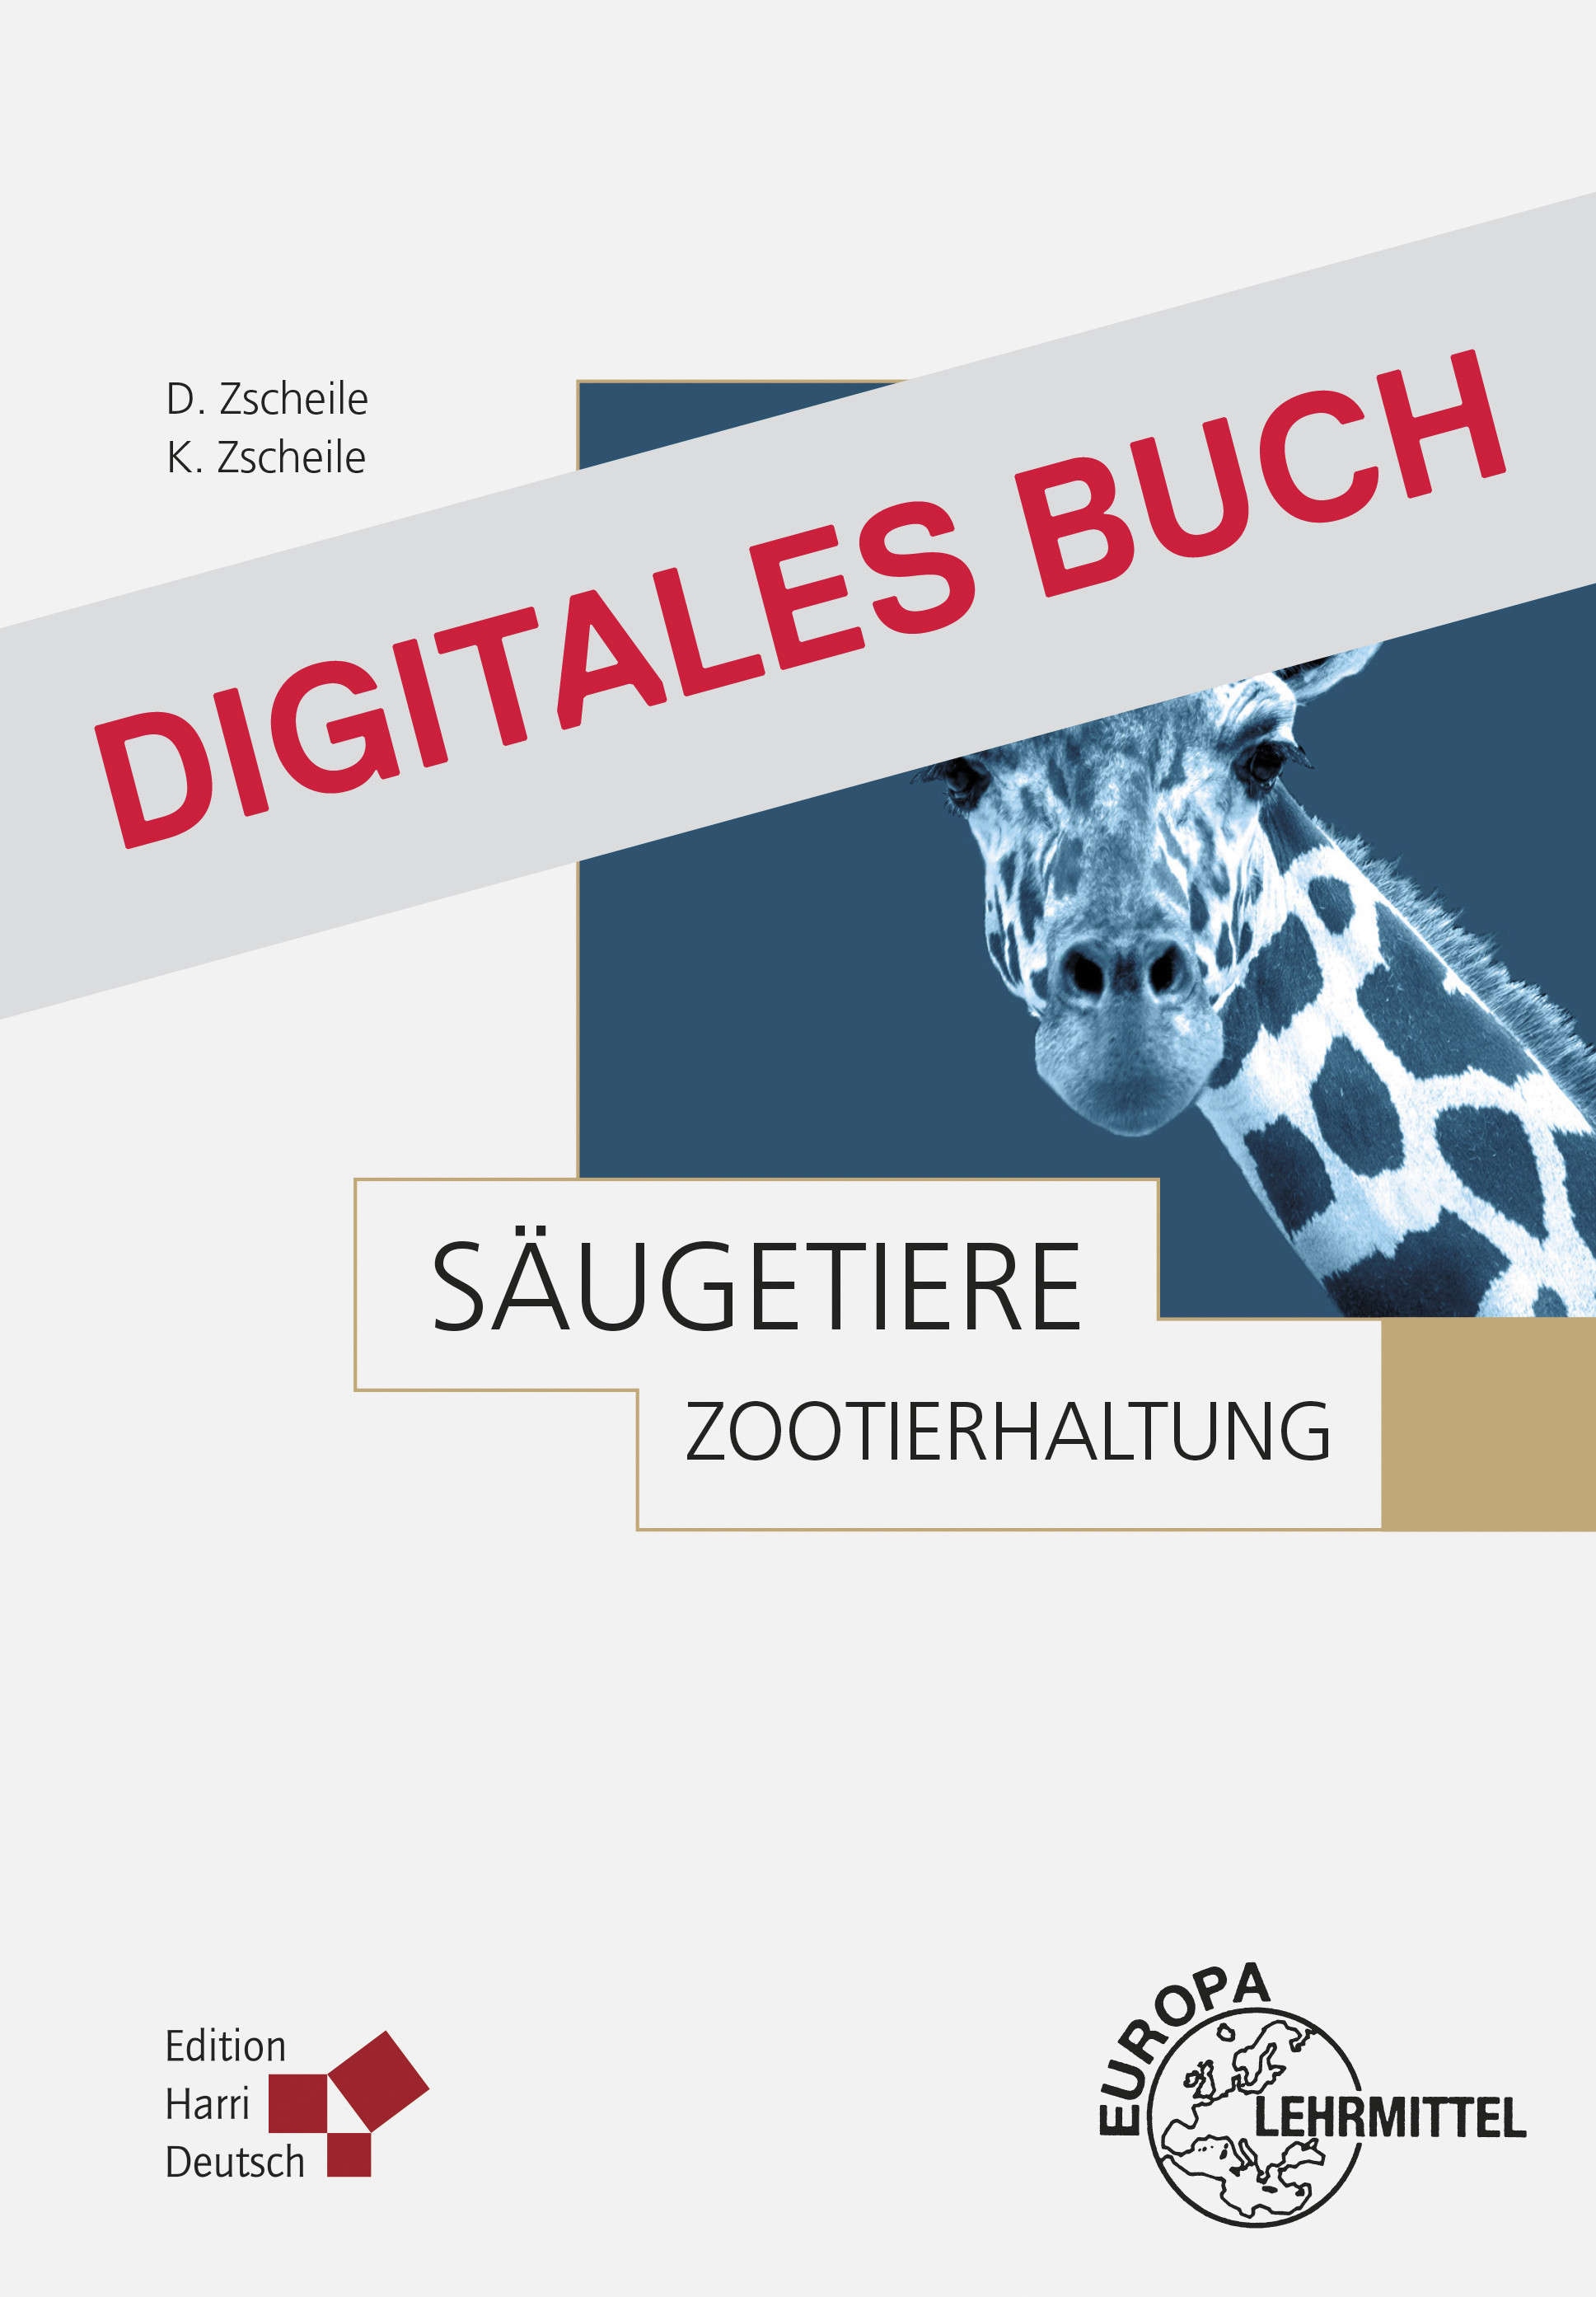 Zootierhaltung: Säugetiere - Digitales Buch